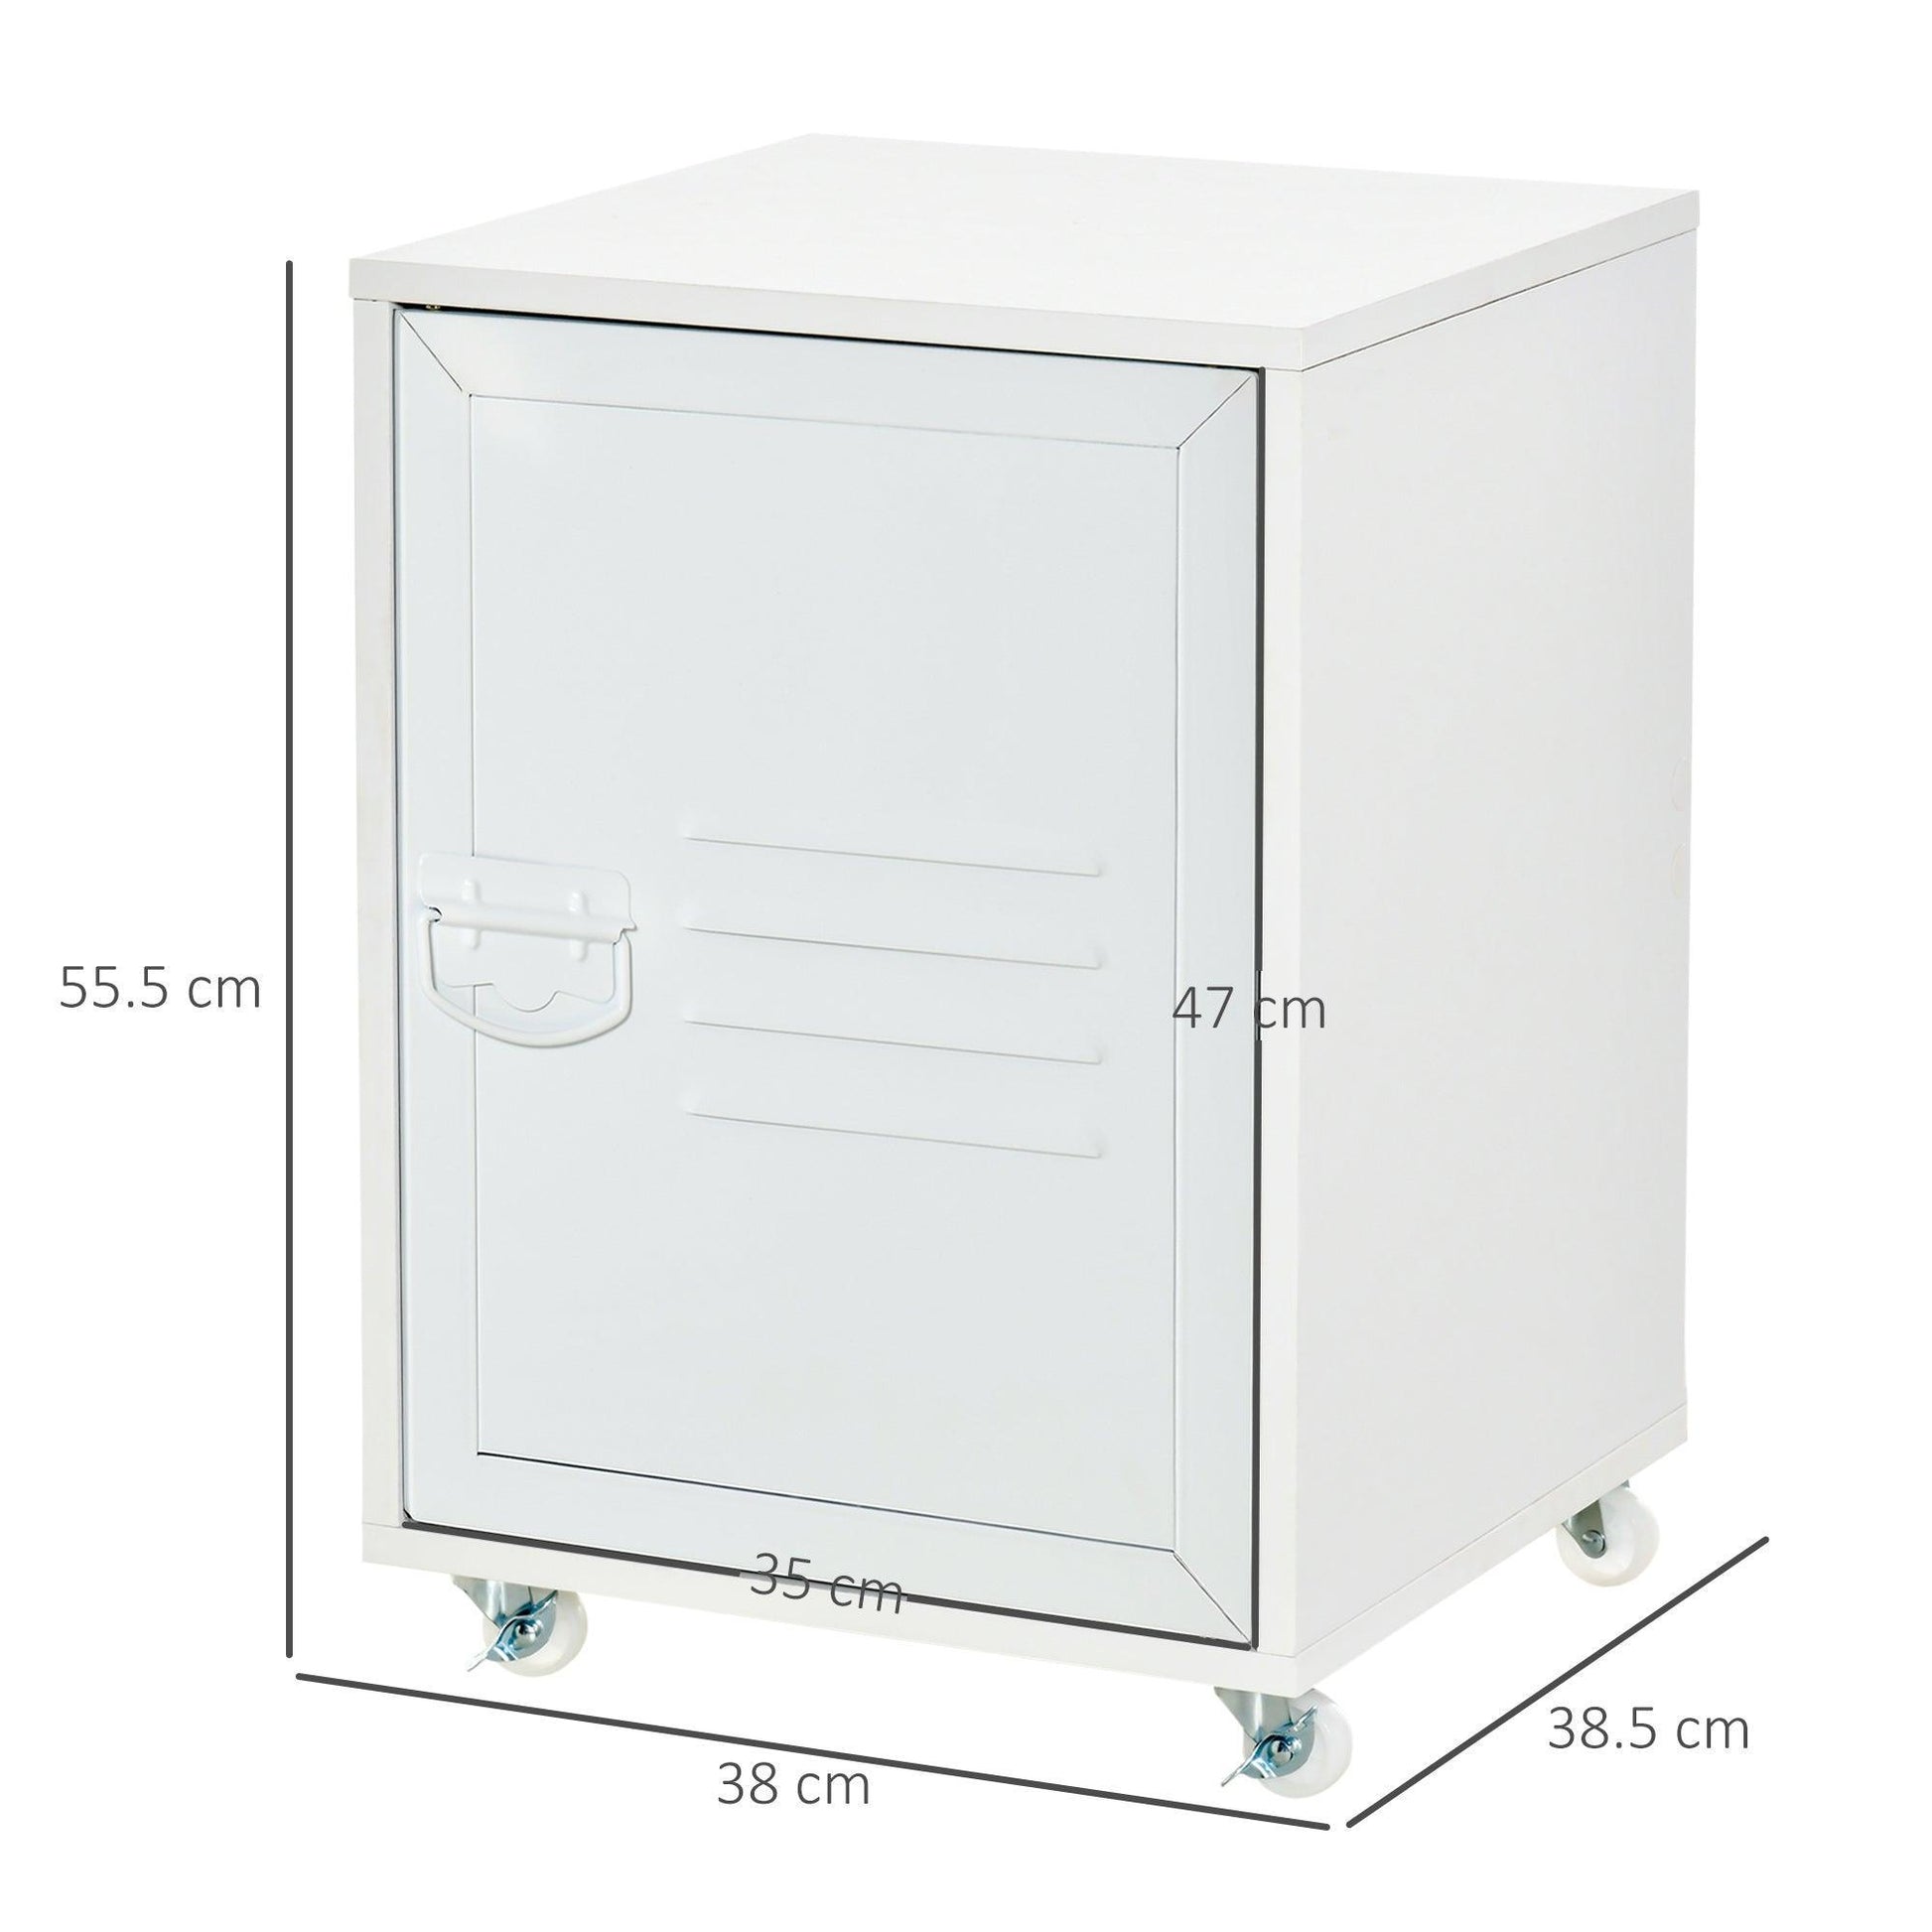 HOMCOM Industrial Rolling Bedside Table: Mobile Storage Cabinet - ALL4U RETAILER LTD